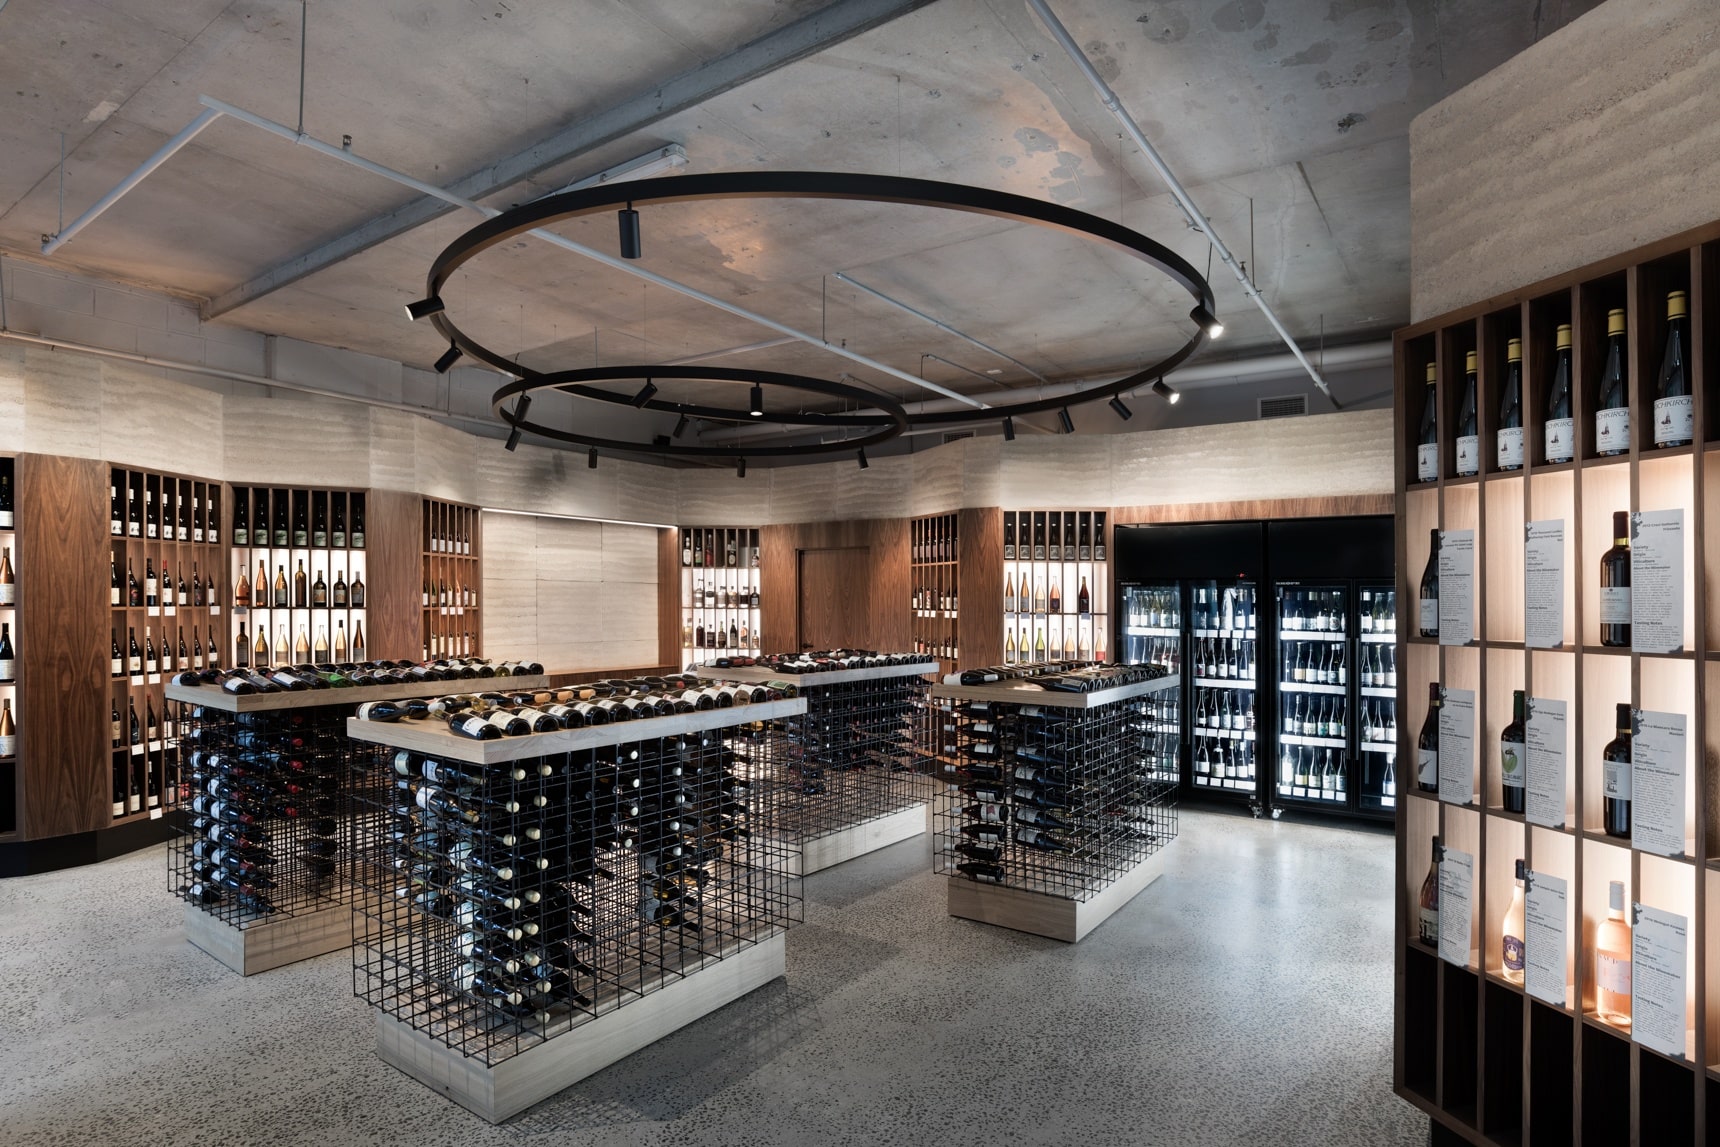 Thiết kế showroom rượu theo phong cách industrial sử dụng những vật liệu thô cứng mạnh mẽ